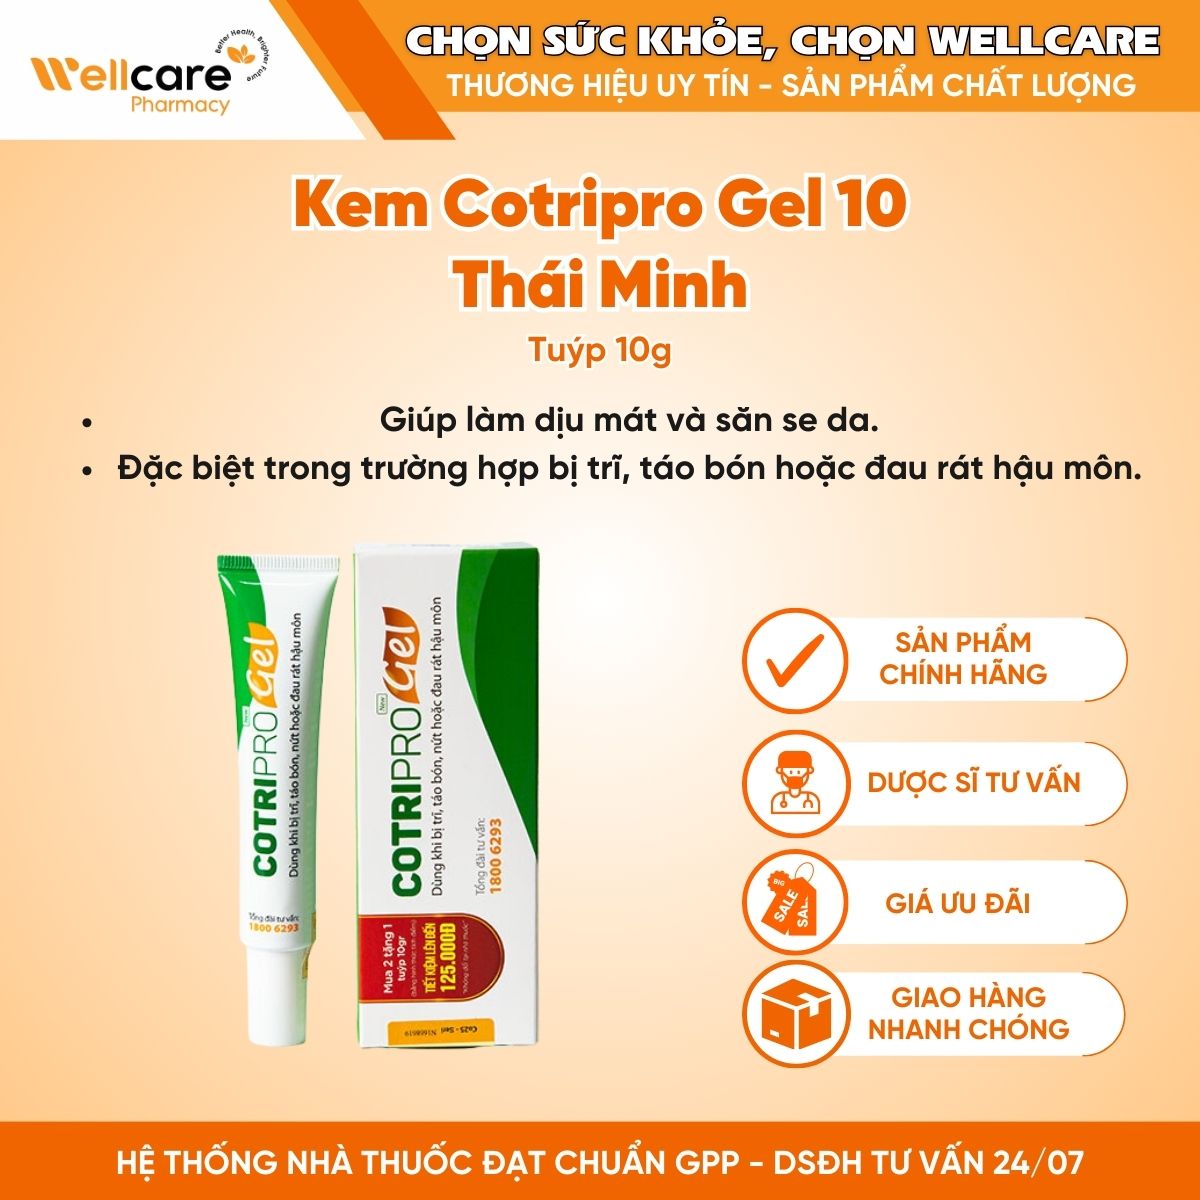 Kem Cotripro Gel 10 Thái Minh – Hỗ trợ cho người bị trĩ, táo bón, nứt hoặc đau rát hậu môn (Tuýp 10g)